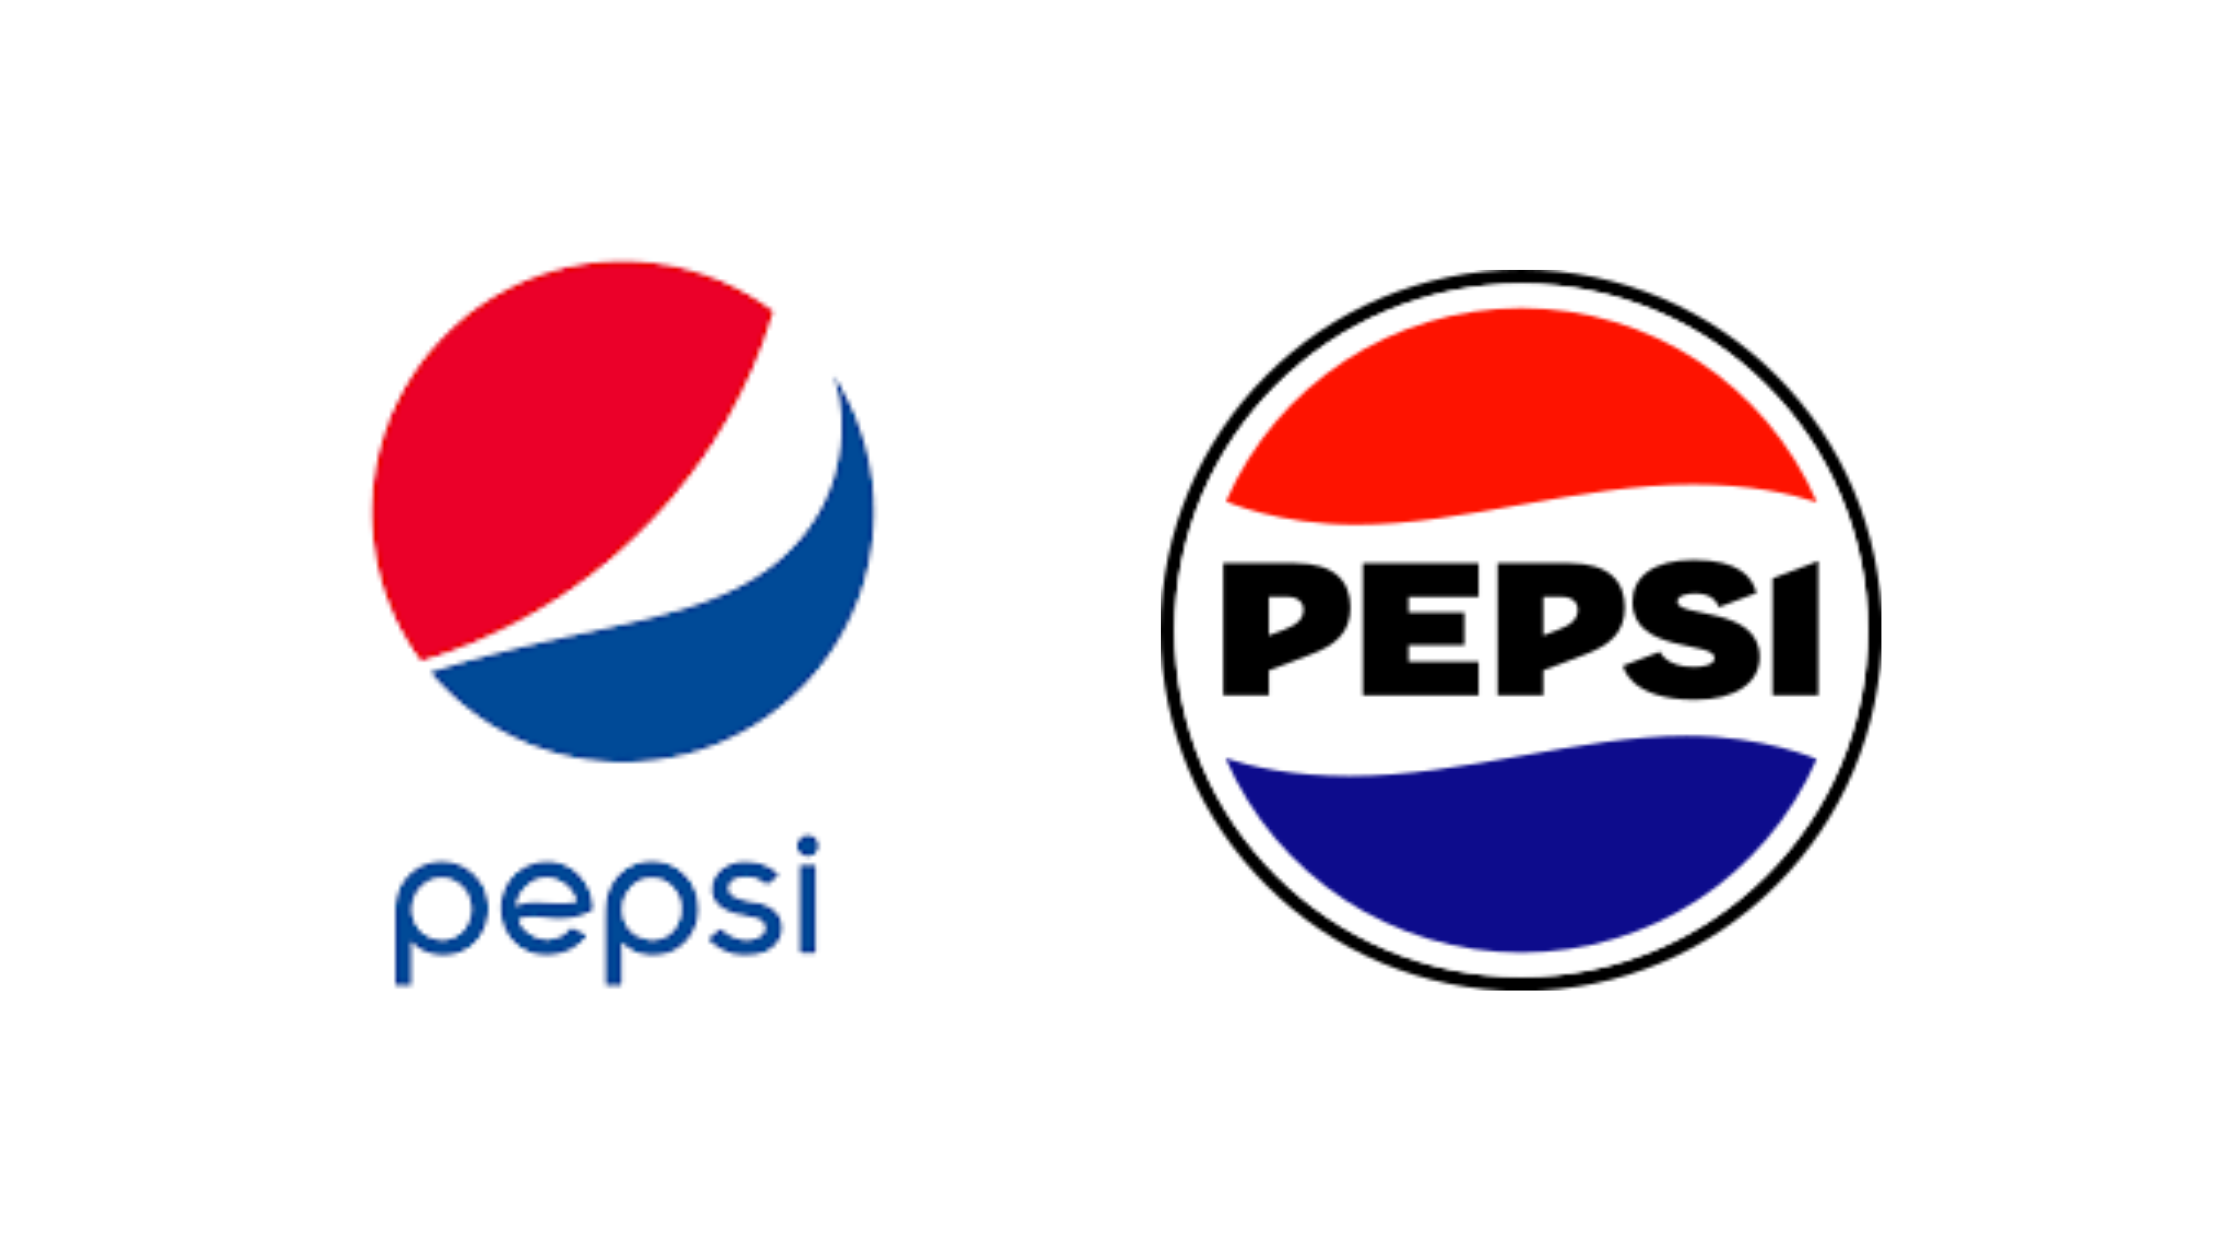 Pepsi celebra os 125 anos com nova identidade visual